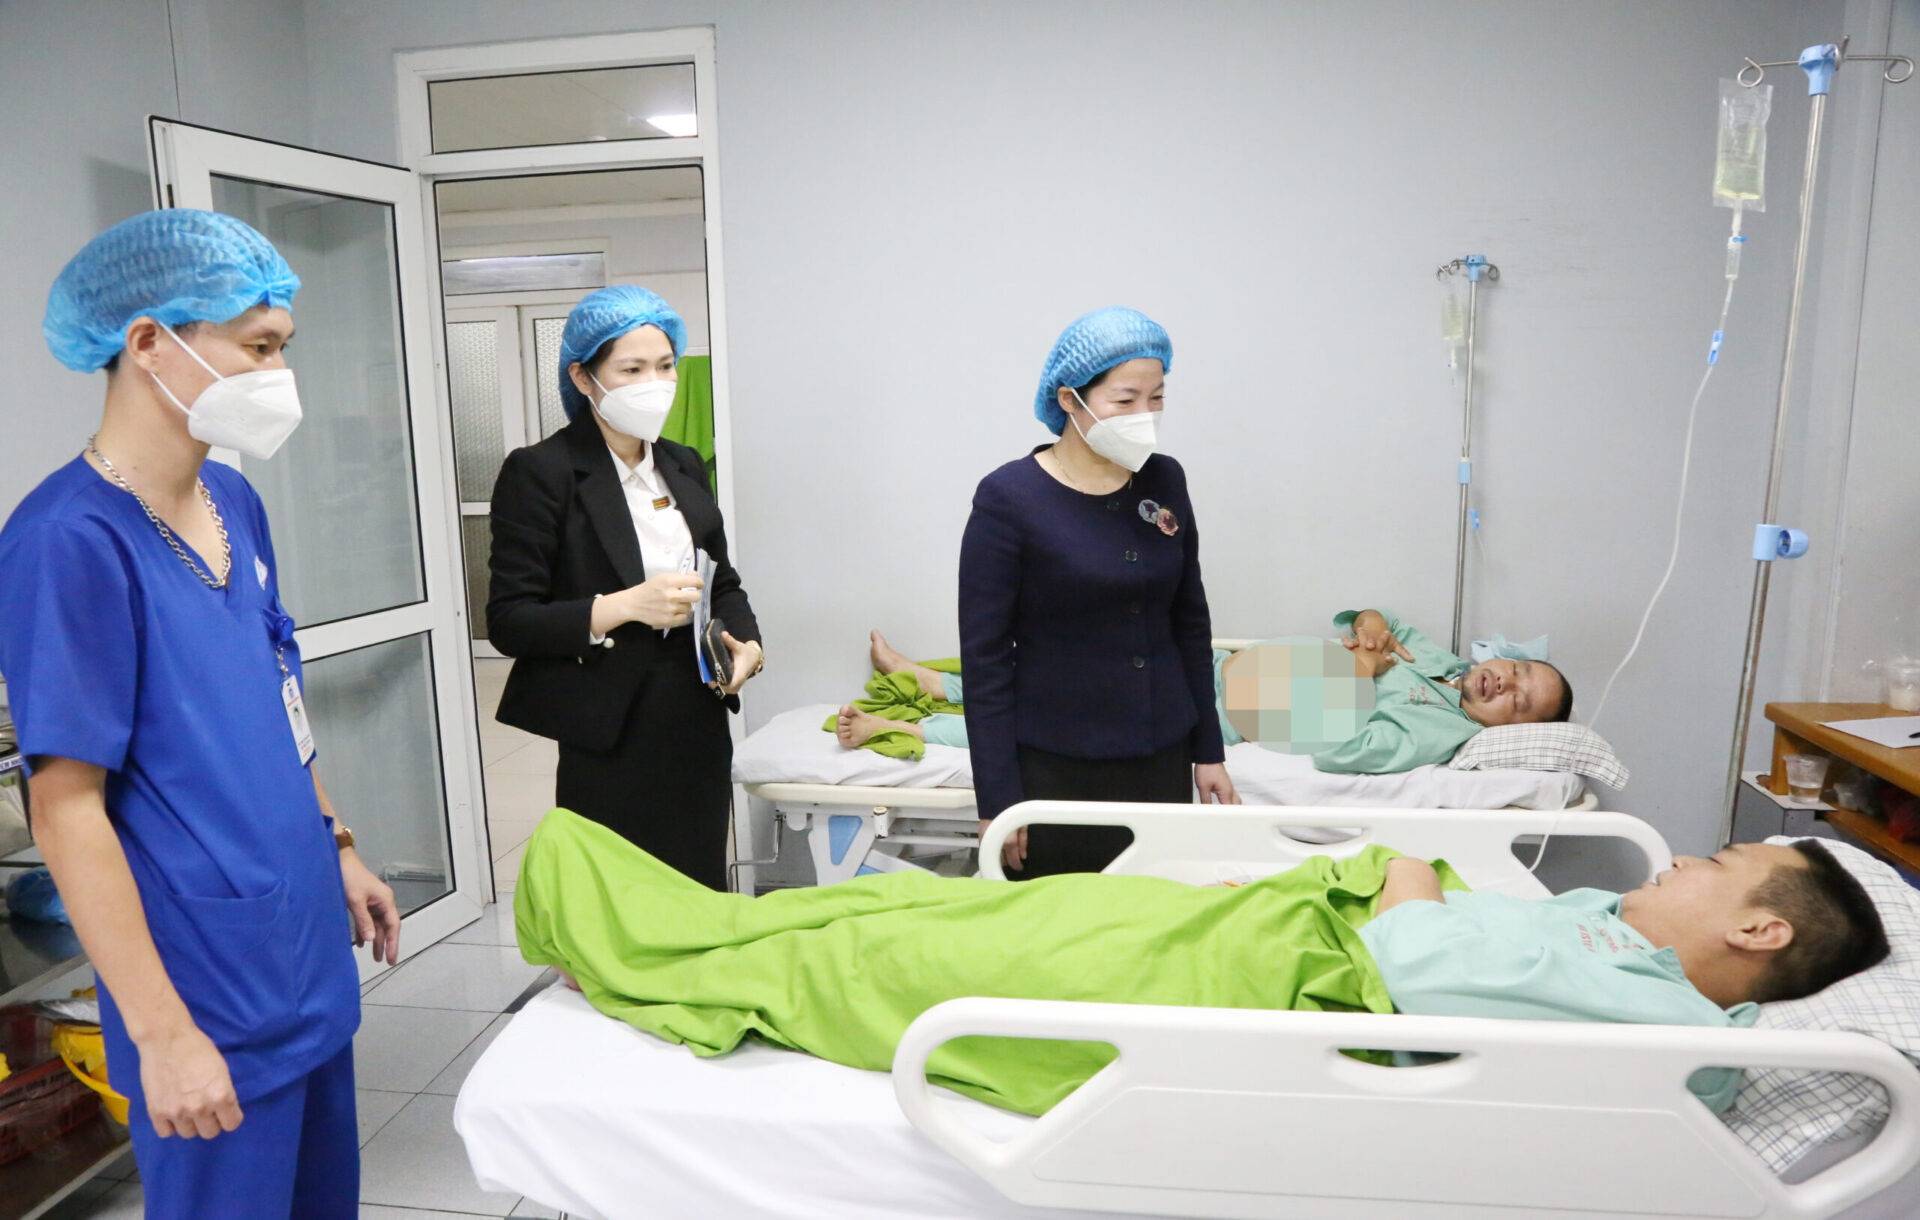 Đoàn giám sát chia thành các nhóm trực tiếp đi kiểm tra công tác triển khai thực tế tại Bệnh viện